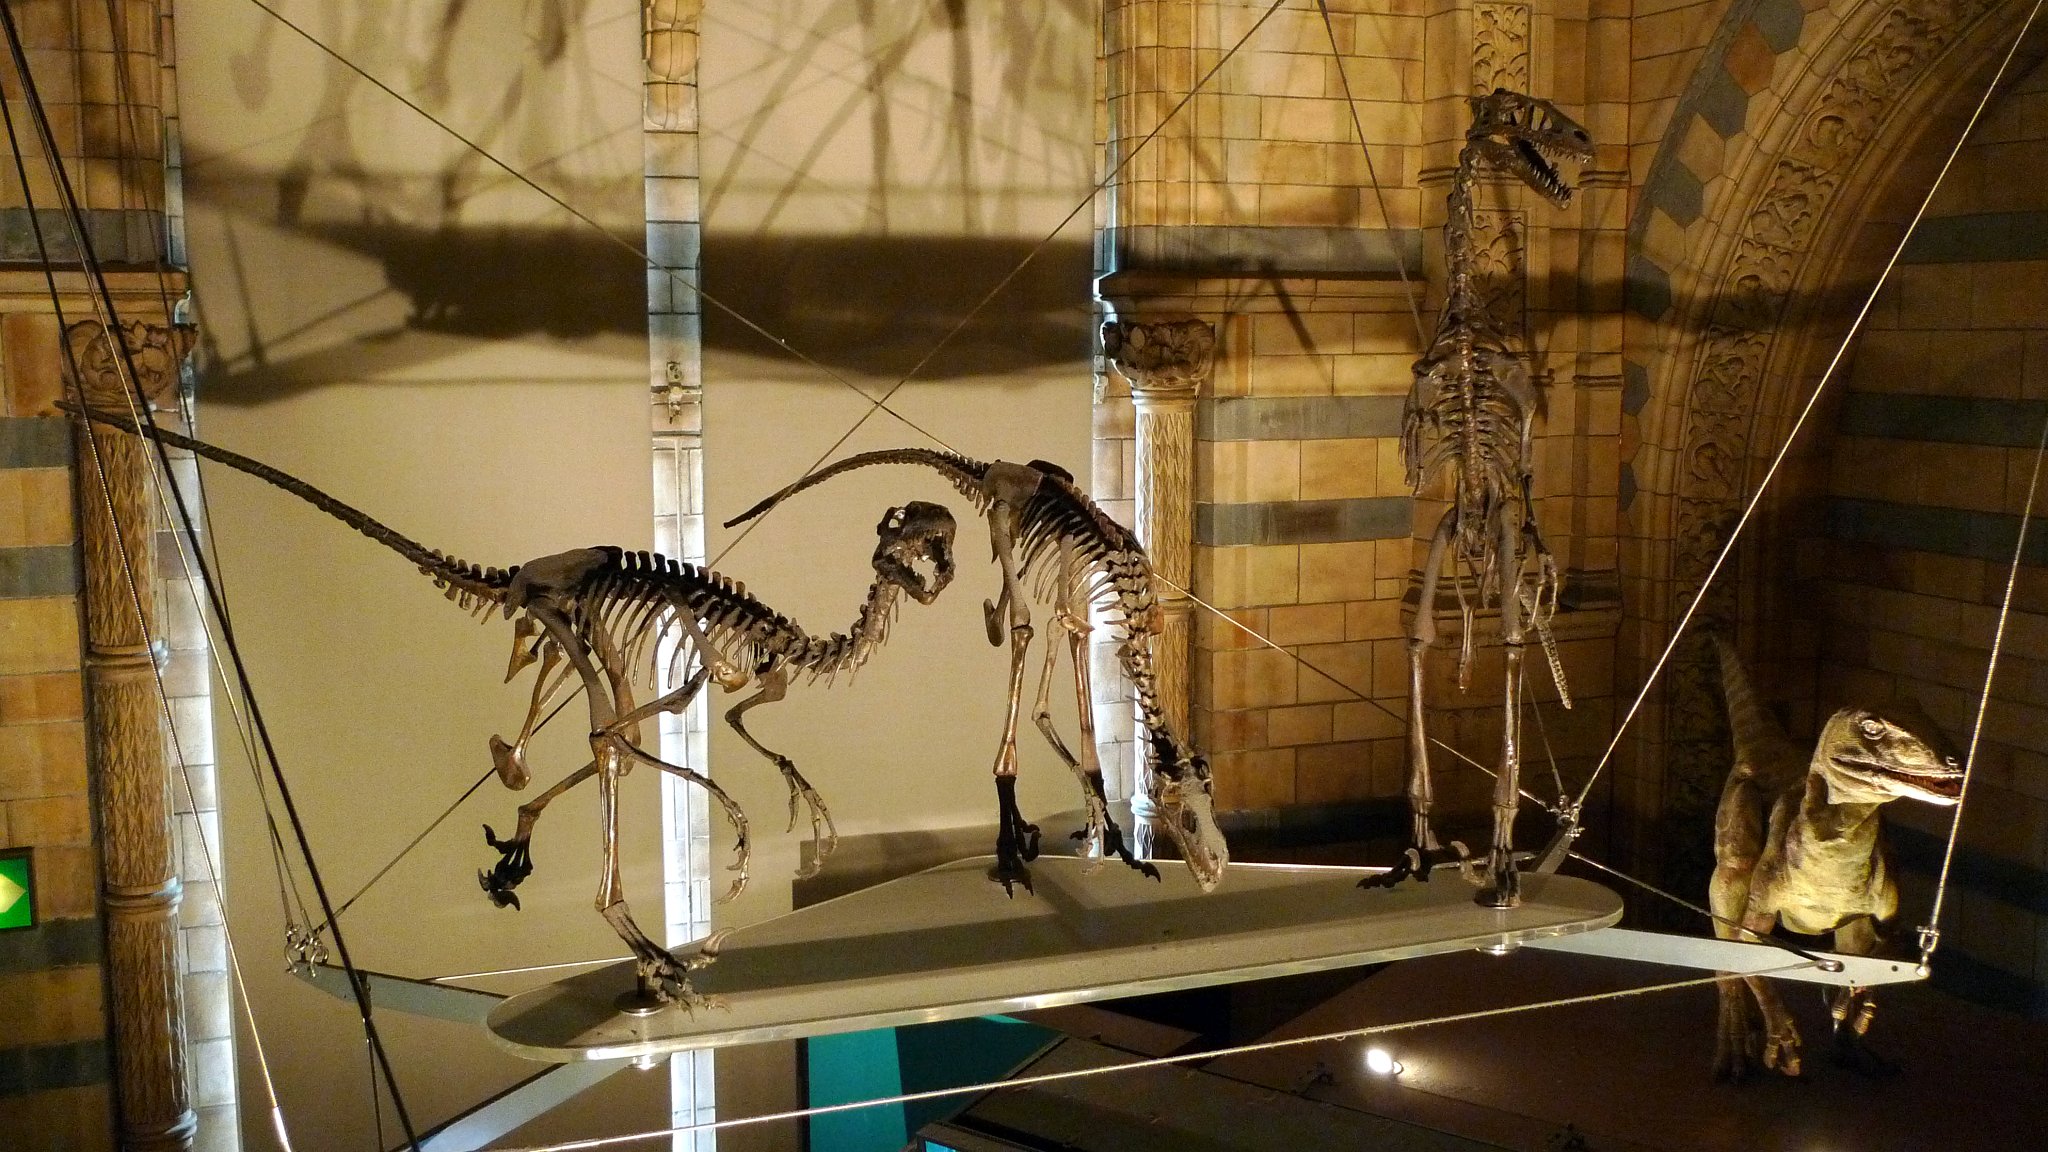 P1070574_2.jpg - Dromaeosaurus ("běhající ještěr") byl malý a rychlý teropodní dinosaurus. Žil v pozdní křídě před asi 76-74 miliony let na území dnešní Severní Ameriky. Dosahoval délky asi 1,8 metrů čímž byl menší než jeho blízký příbuzný Deinonychus. Byl také jako první objevený dinosaurus se srpovitým drápem na druhém prstu dolních končetin. Potíže při jeho konstrukci ale způsobily, že byl správně zařazen až po popsání rodu Deinonychus. Jeho životní prostředí bylo plné ceratopsidů a kachnozobých dinosaurů, pachycefalosaurů, ankylosaurů i tyrannosauridů, jako byl např. Albertosaurus. Příbuznými rody jsou například Deinonychus nebo Velociraptor.